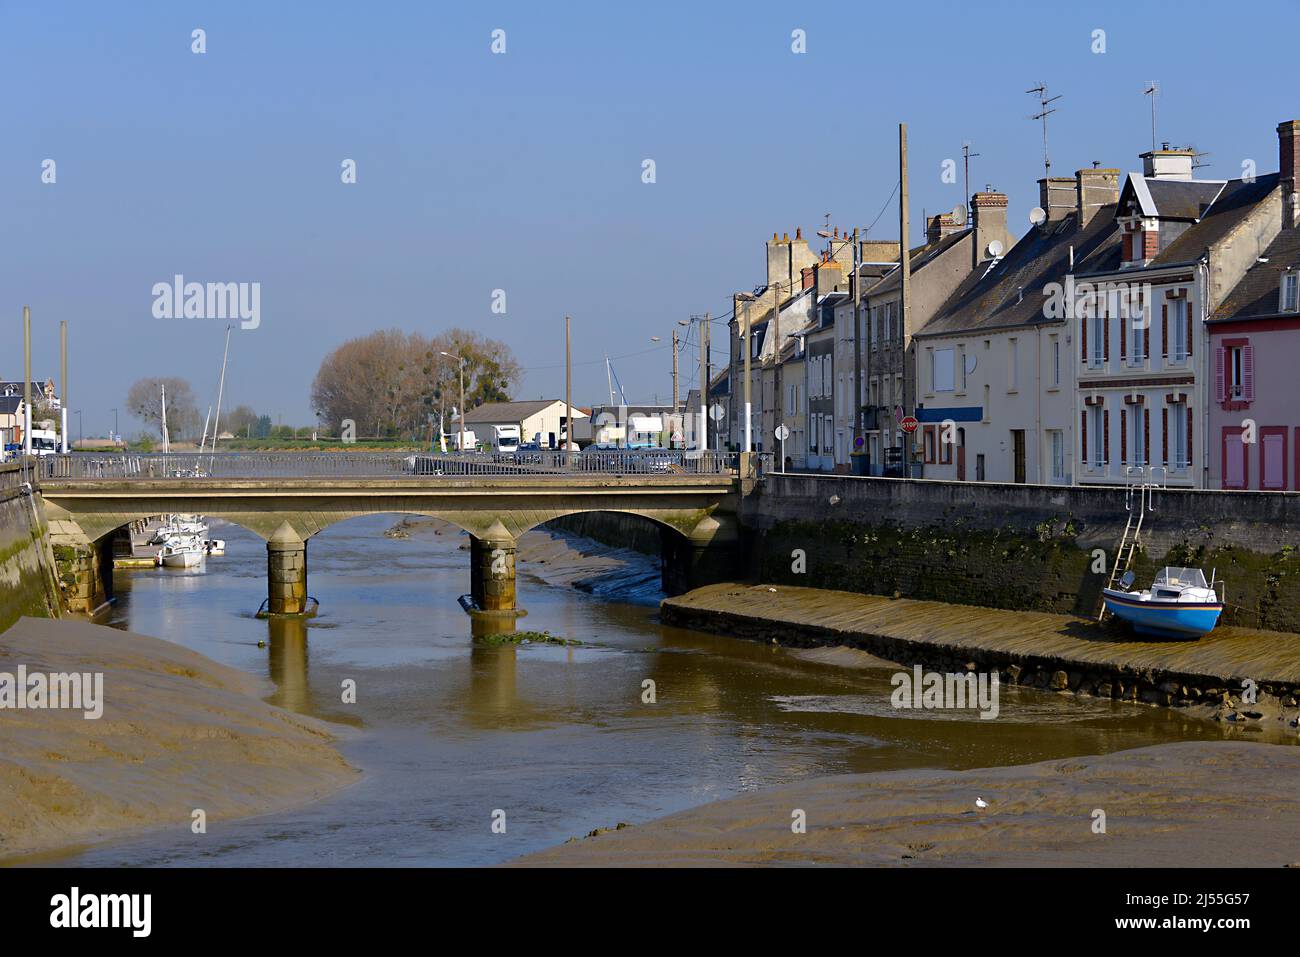 Chenal und Brücke bei Ebbe in der Stadt Isigny sur Mer, Gemeinde im Département Calvados in der Region Basse-Normandie im Nordwesten Frankreichs. Stockfoto